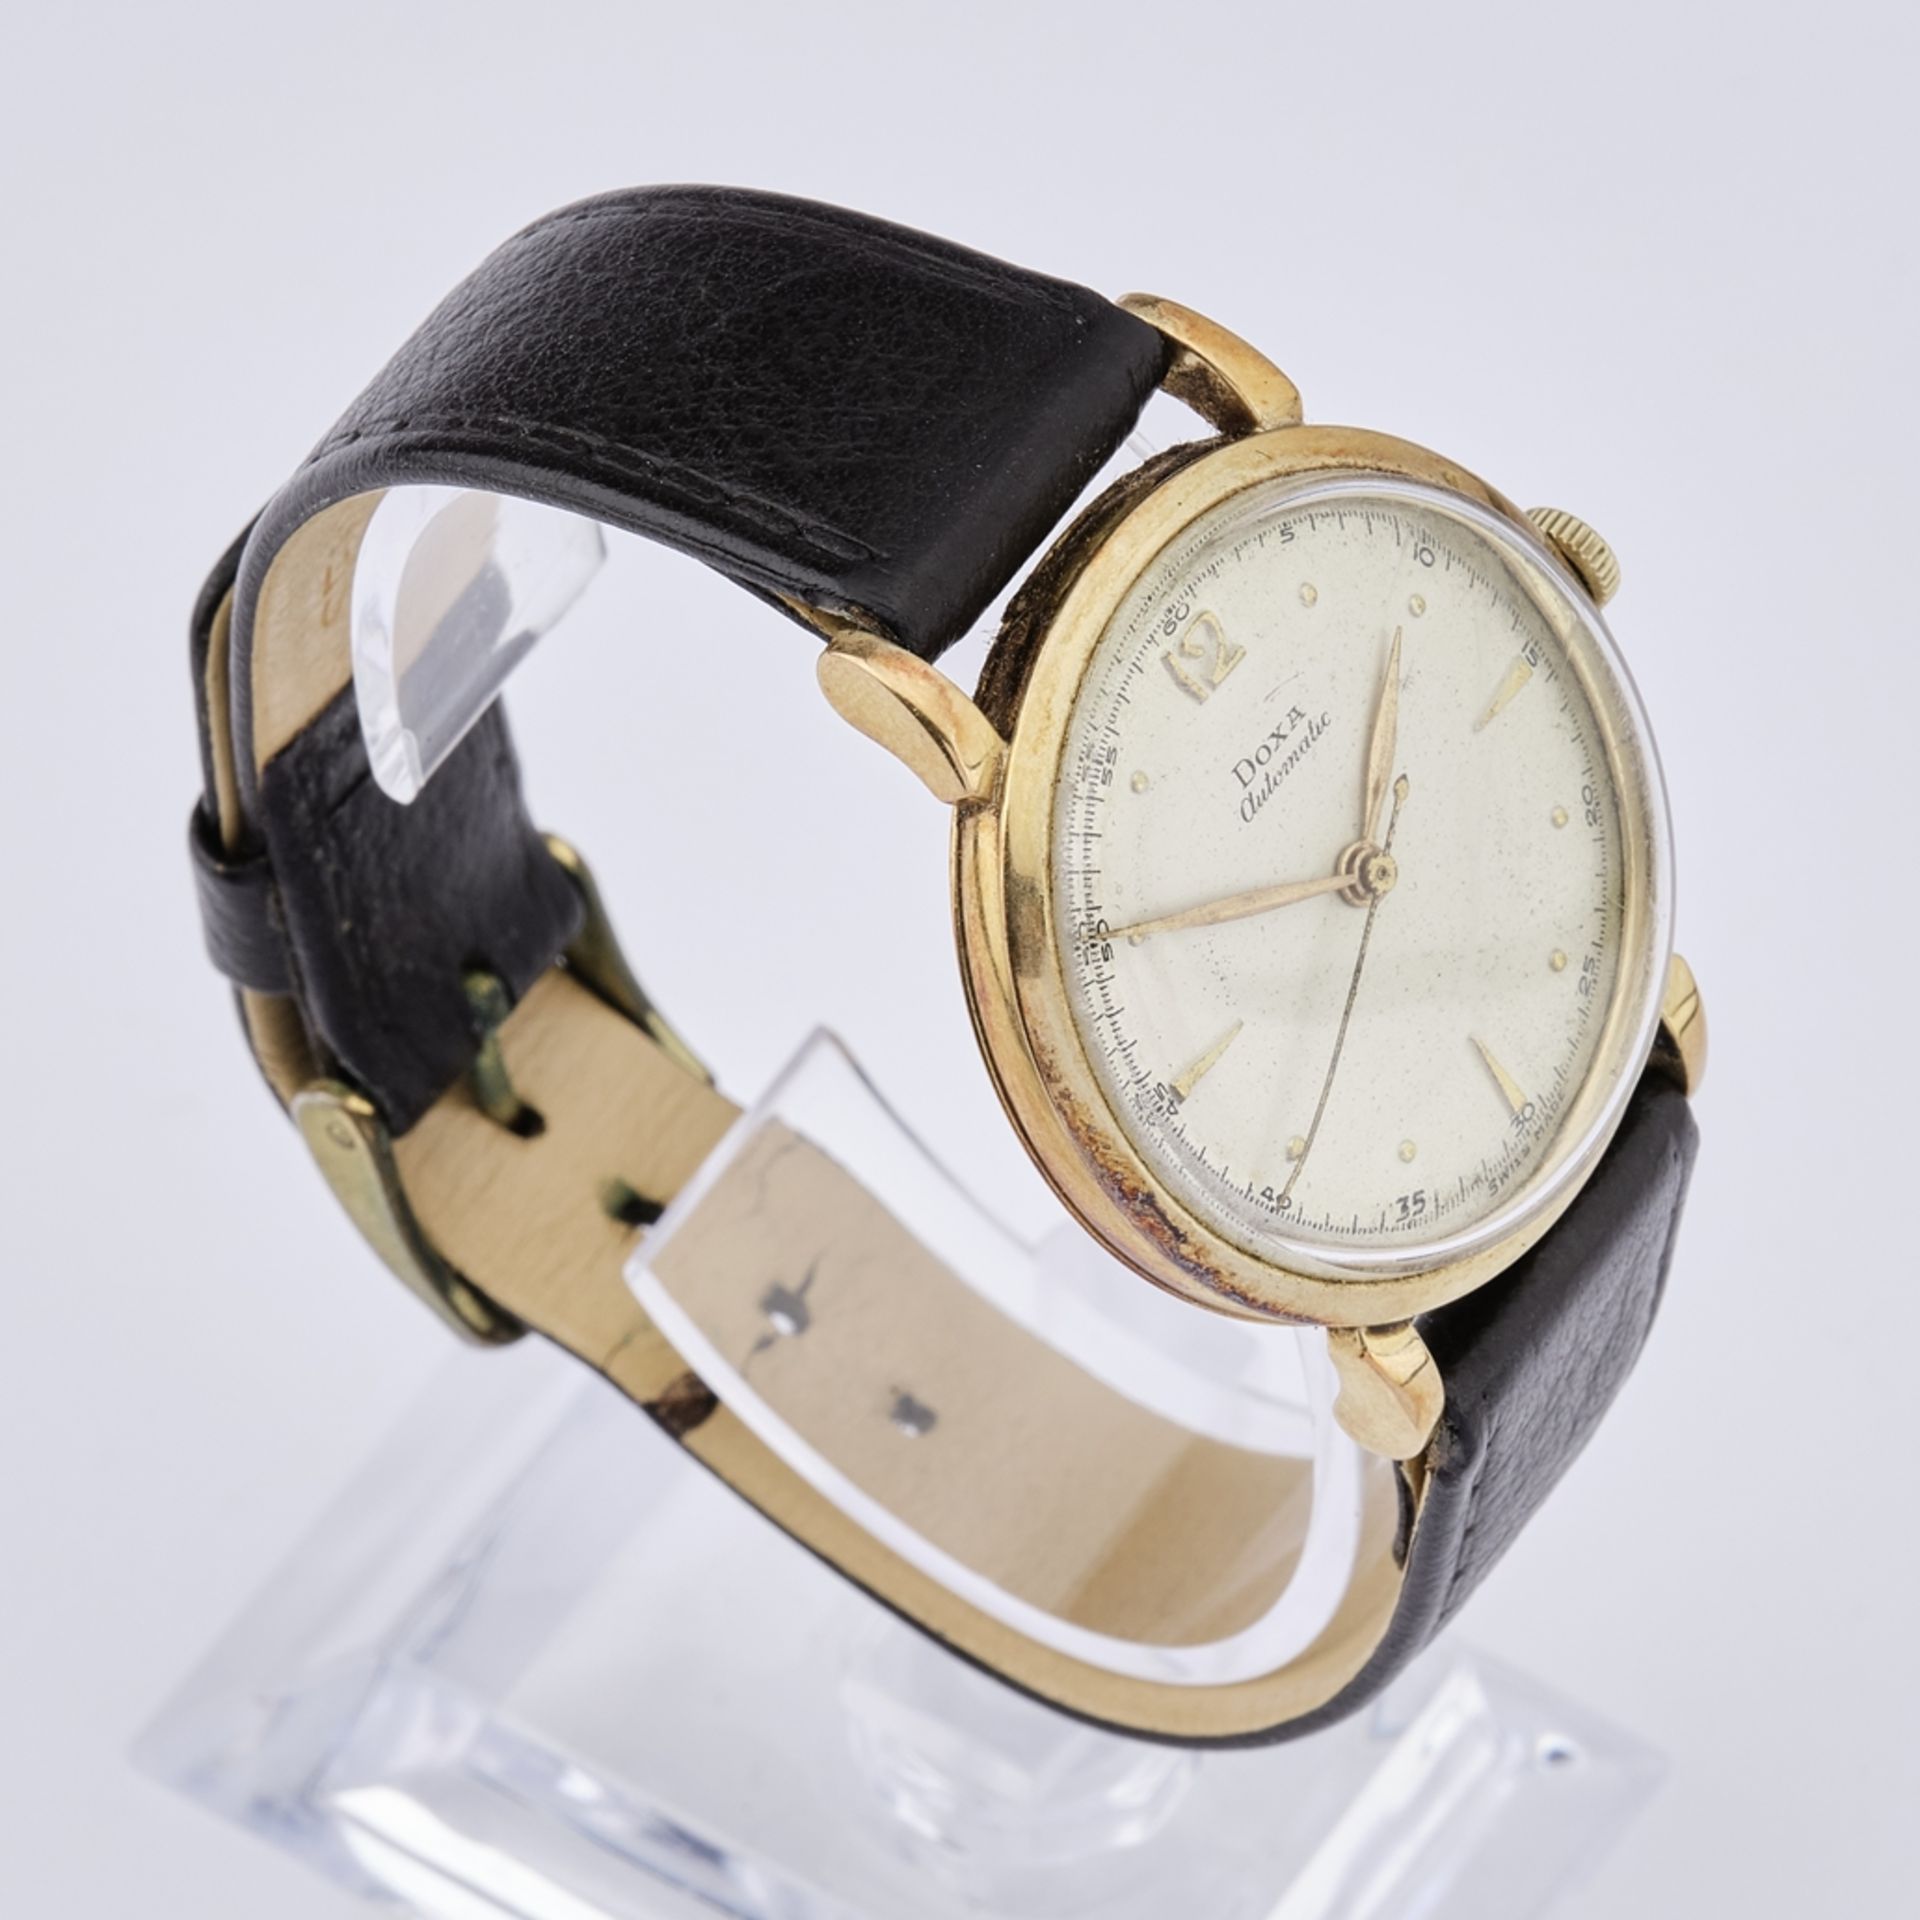 Armbanduhr Doxa Automatic, Schweiz, 1950er Jahre, GG 585, Werk läuft nicht an, Trage-, Gebrauchs- u - Bild 2 aus 4